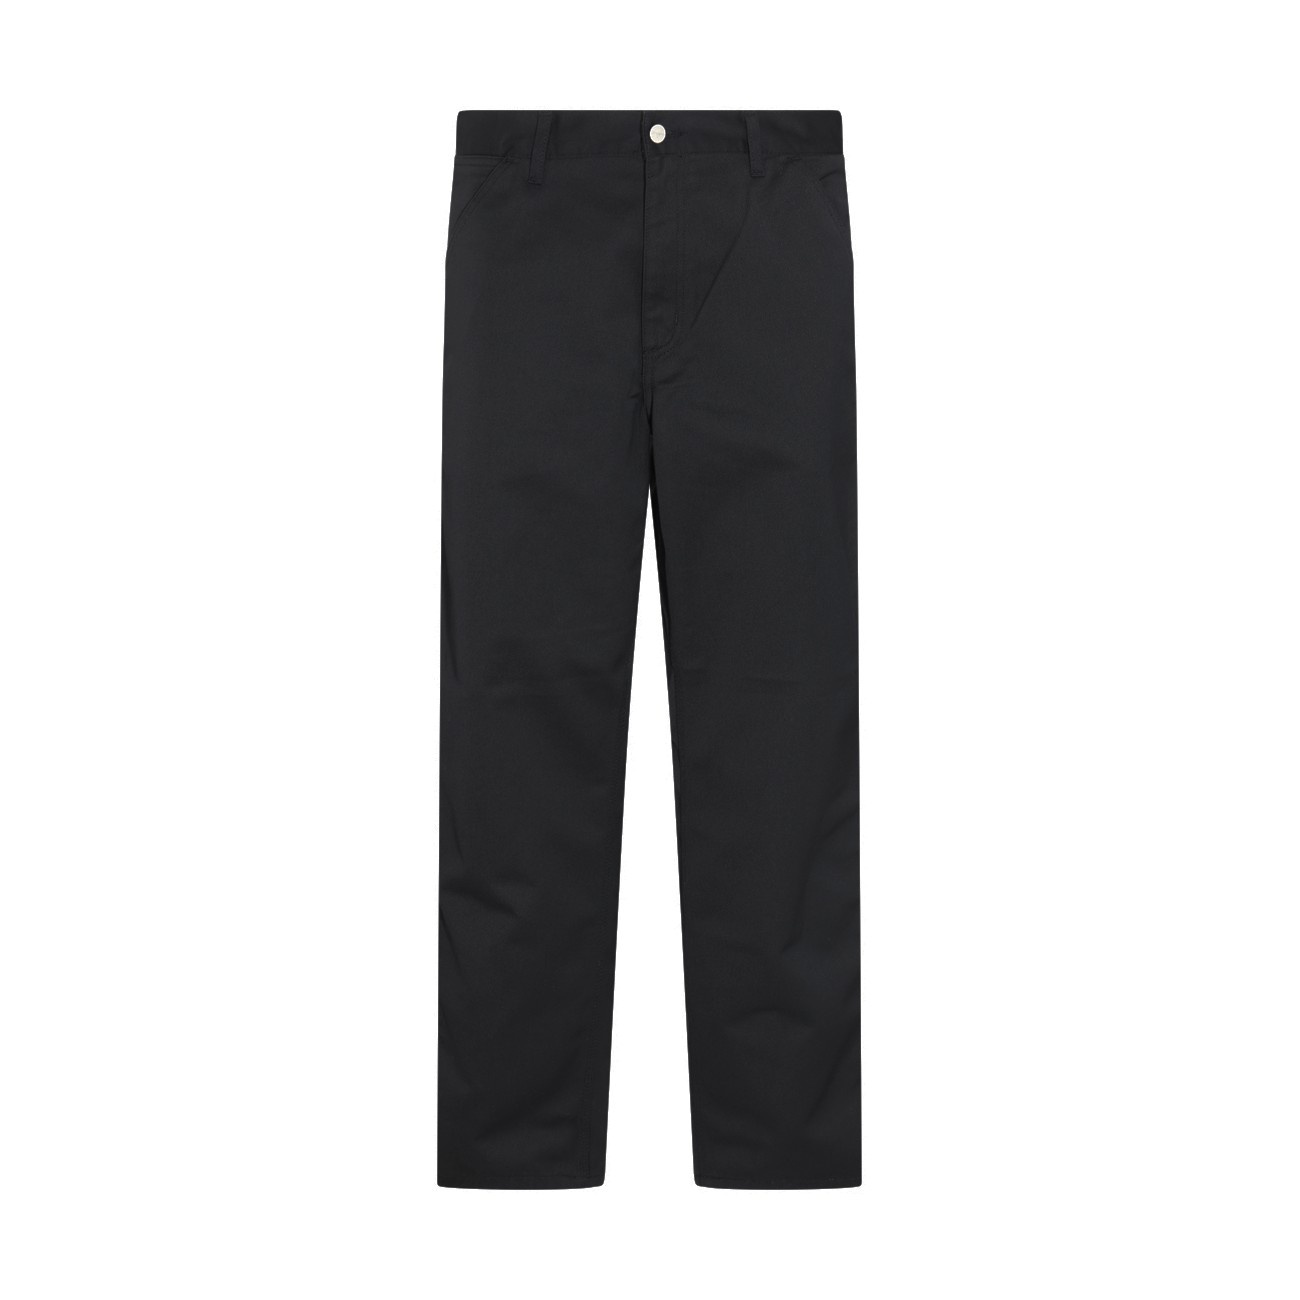 black cotton pants - 1